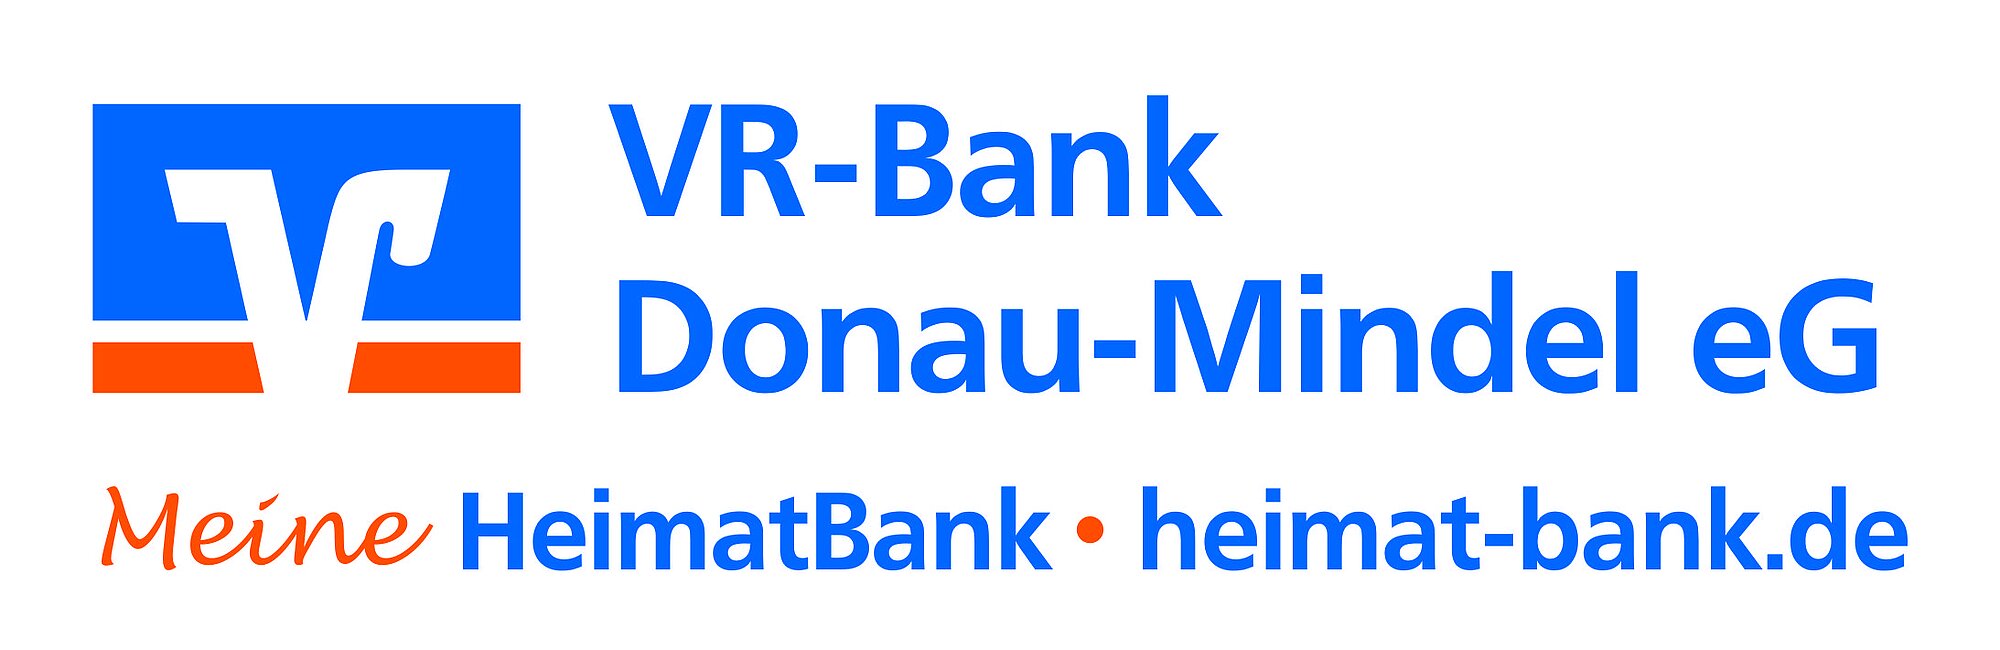 Die VR-Bank unterstützt das Projekt "Bürger forschen". Grafik: VR-Bank